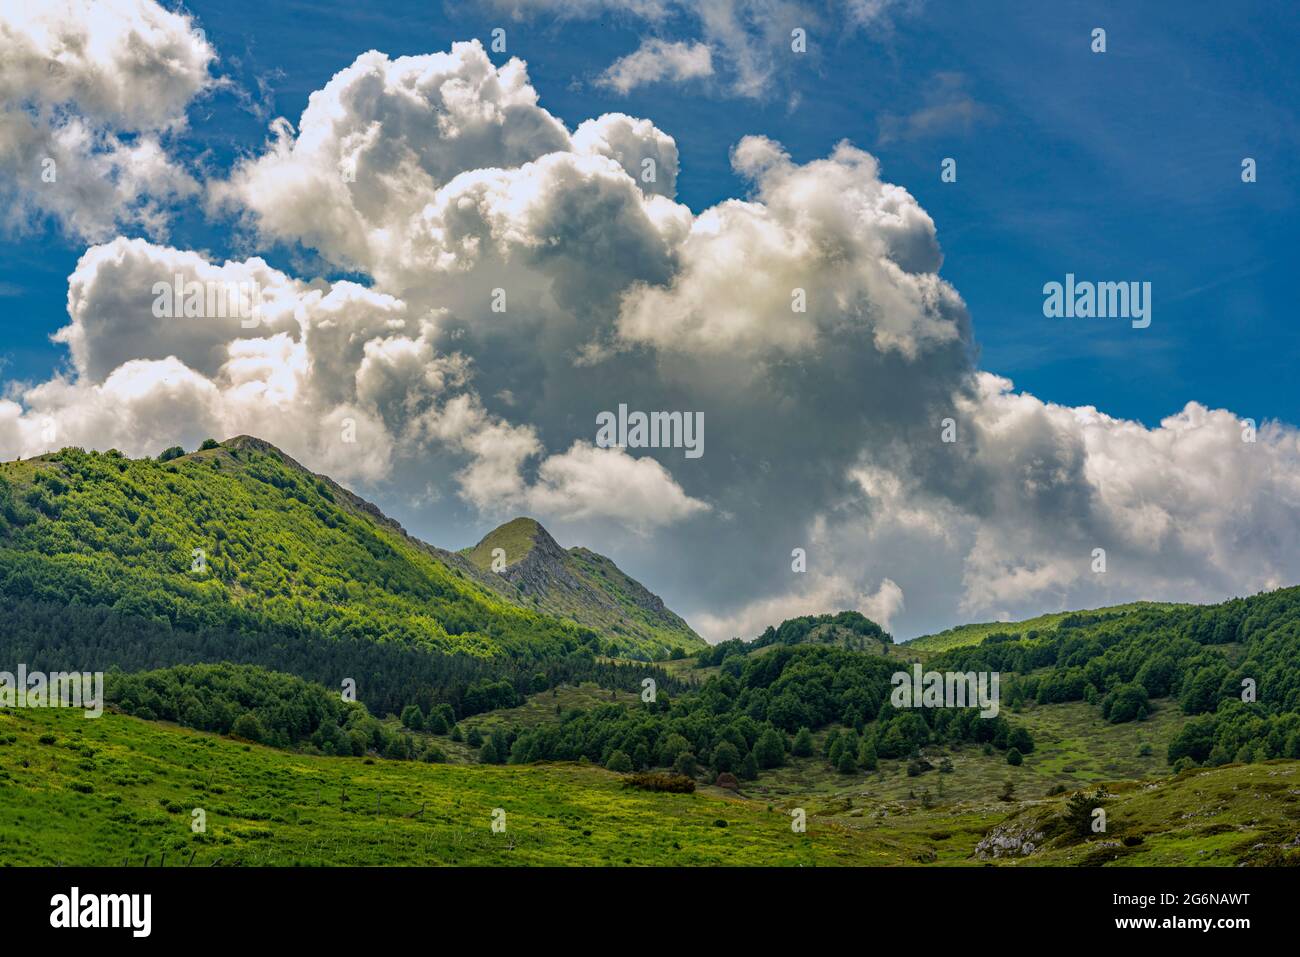 Paysage de montagne avec prairies et bois. Ciel avec de grands tas de nuages menaçants. Abruzzes, Italie, Europe Banque D'Images